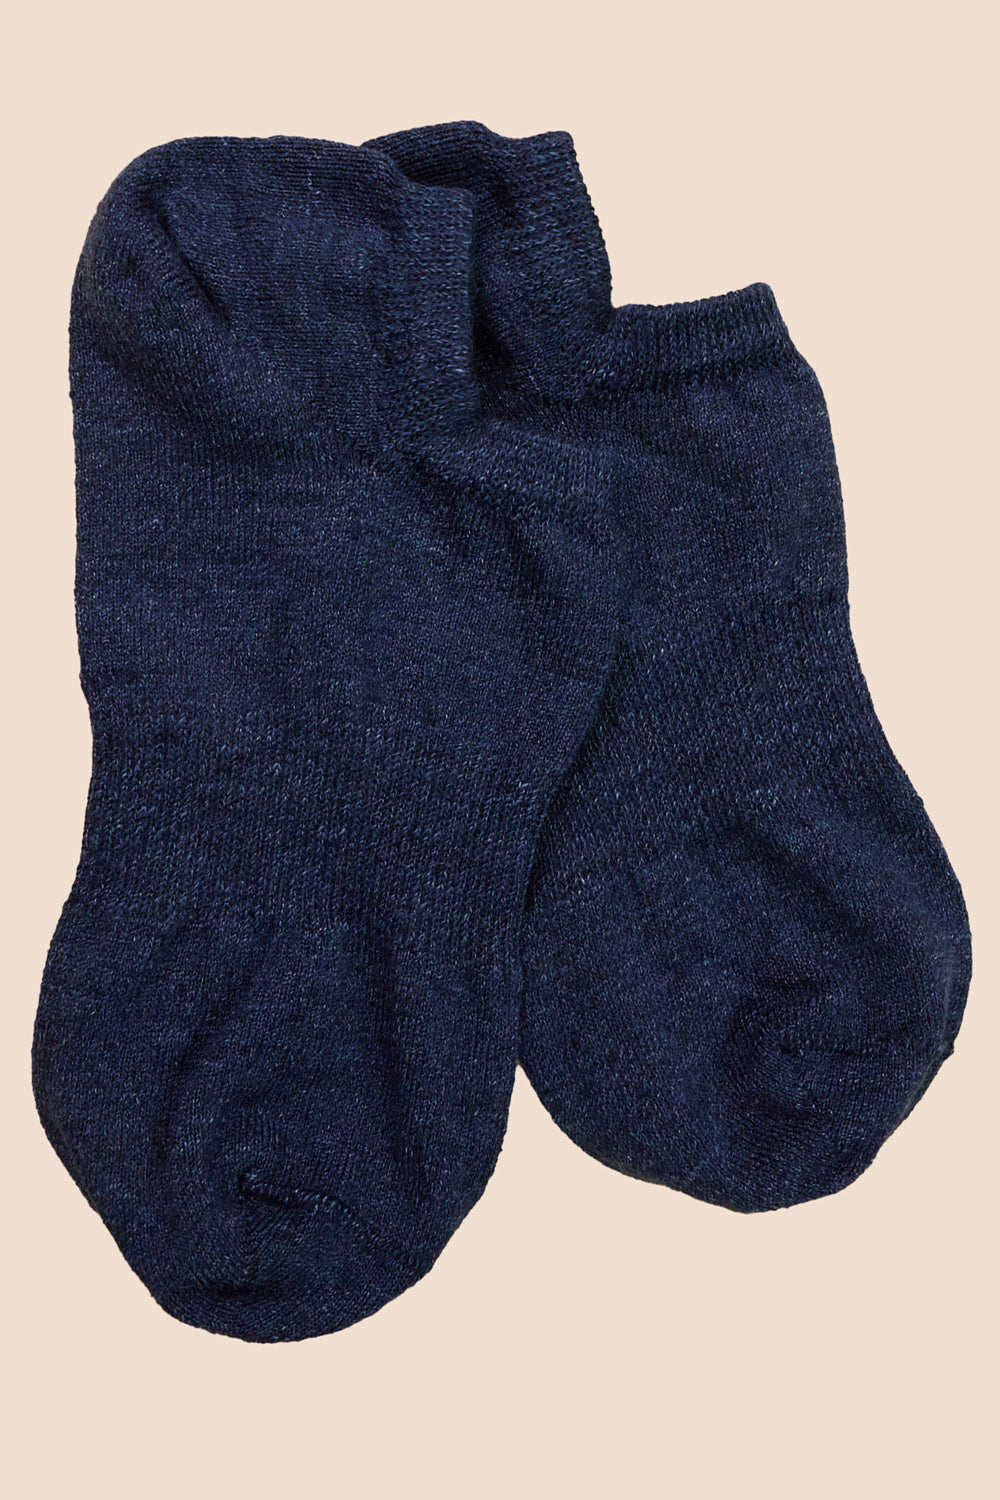 Pétrone chaussettes invisibles lin coton bleu marine pour hommes